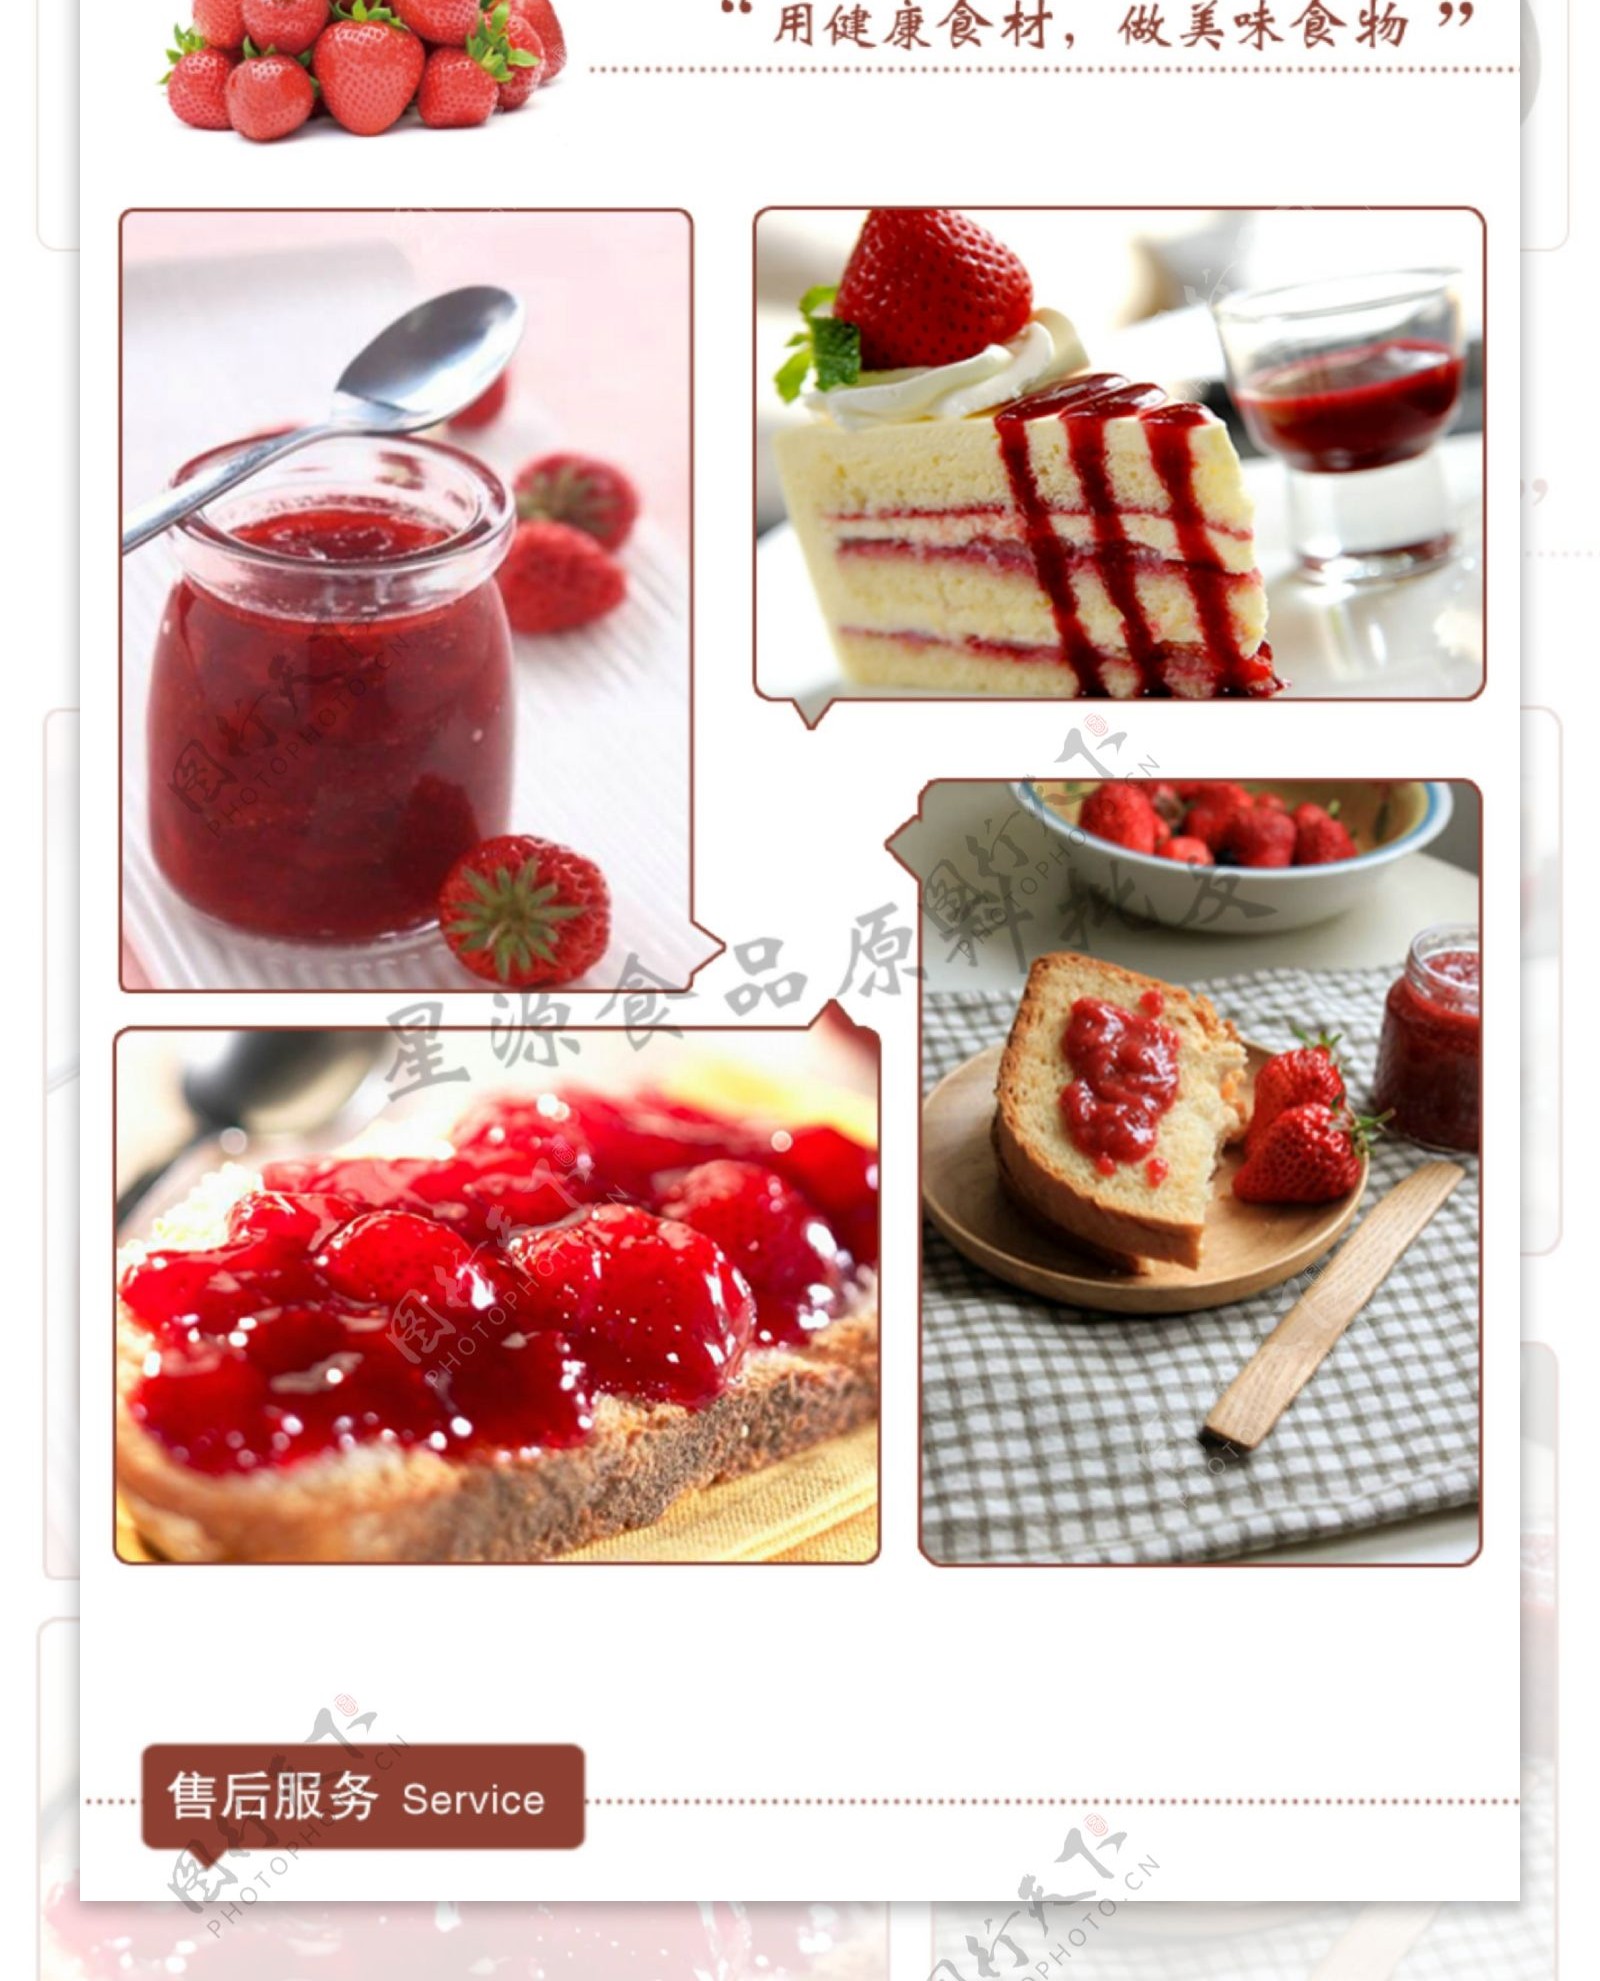 淘宝内页设计草莓果粒鲜活果汁草莓果汁